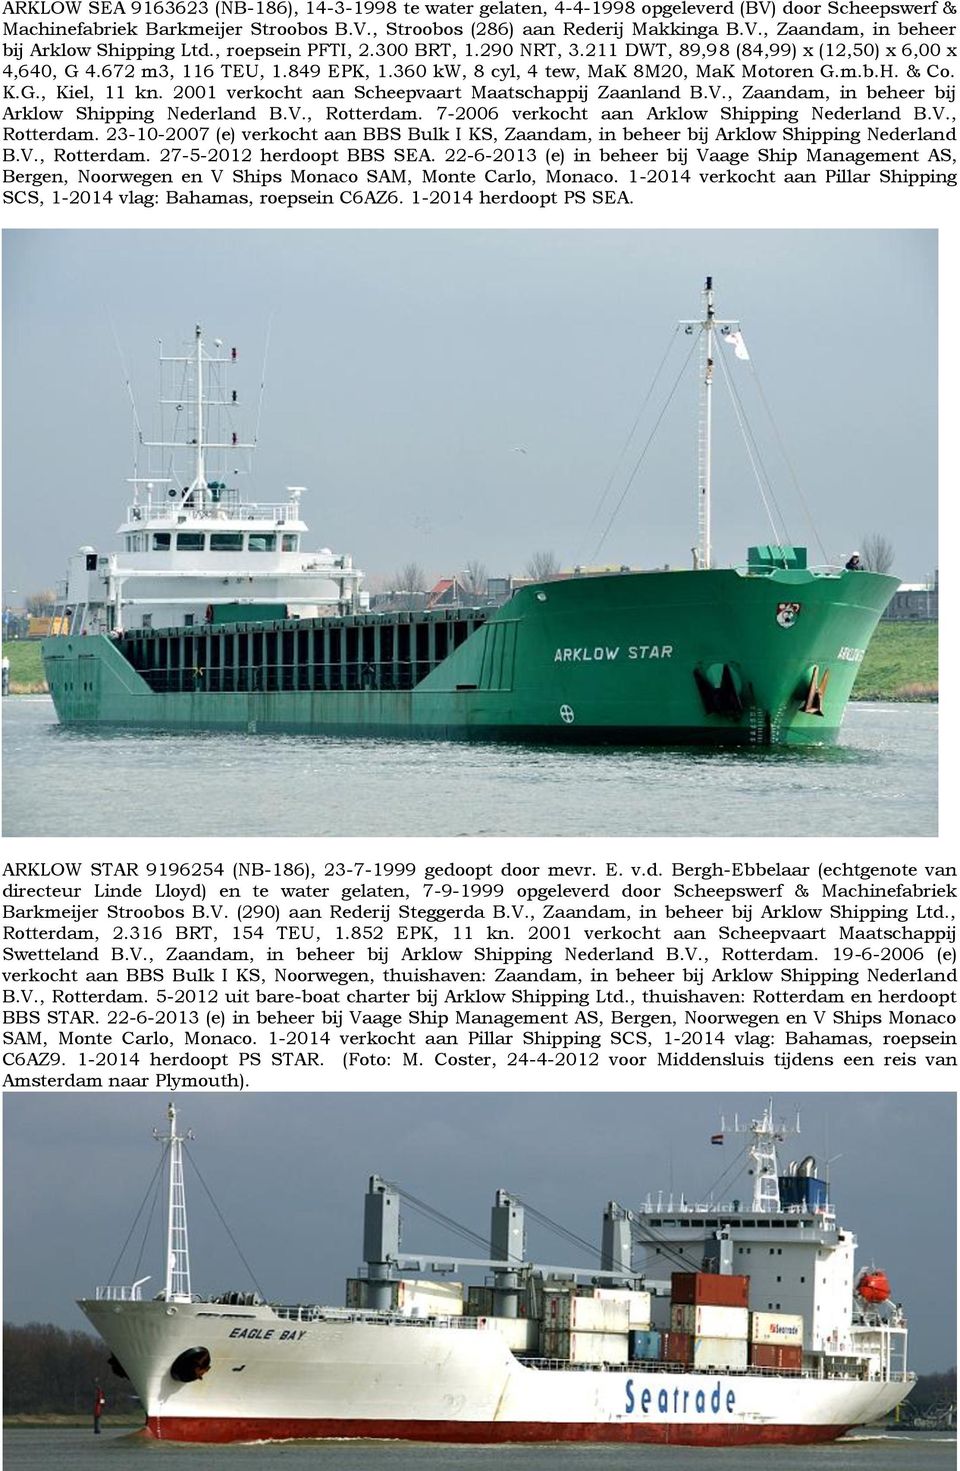 2001 verkocht aan Scheepvaart Maatschappij Zaanland B.V., Zaandam, in beheer bij Arklow Shipping Nederland B.V., Rotterdam.